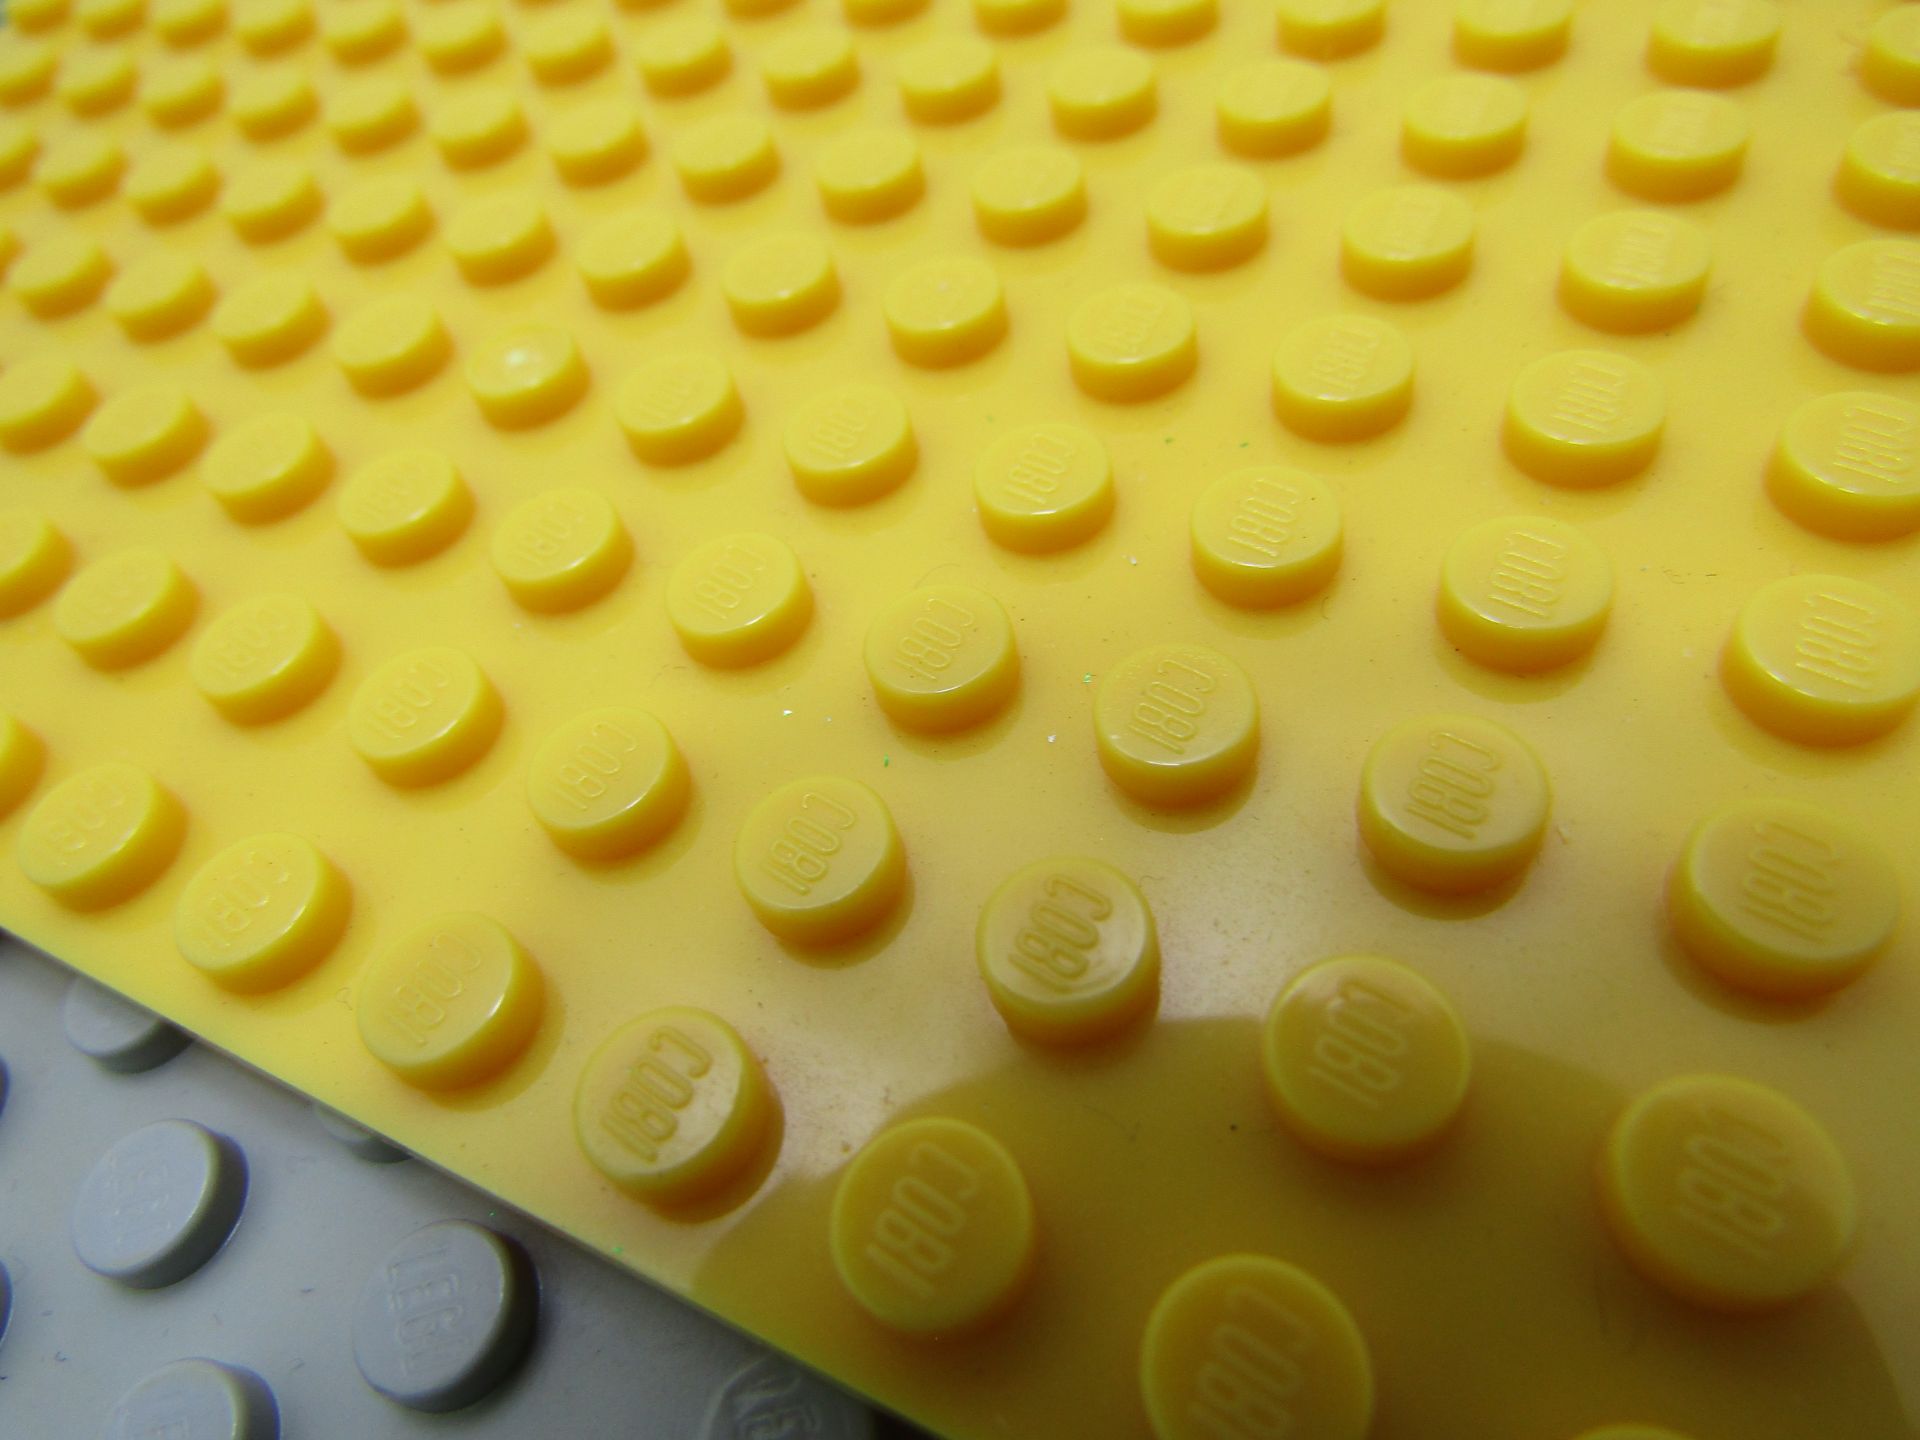 17 x LEGO Base plates. - Image 2 of 3